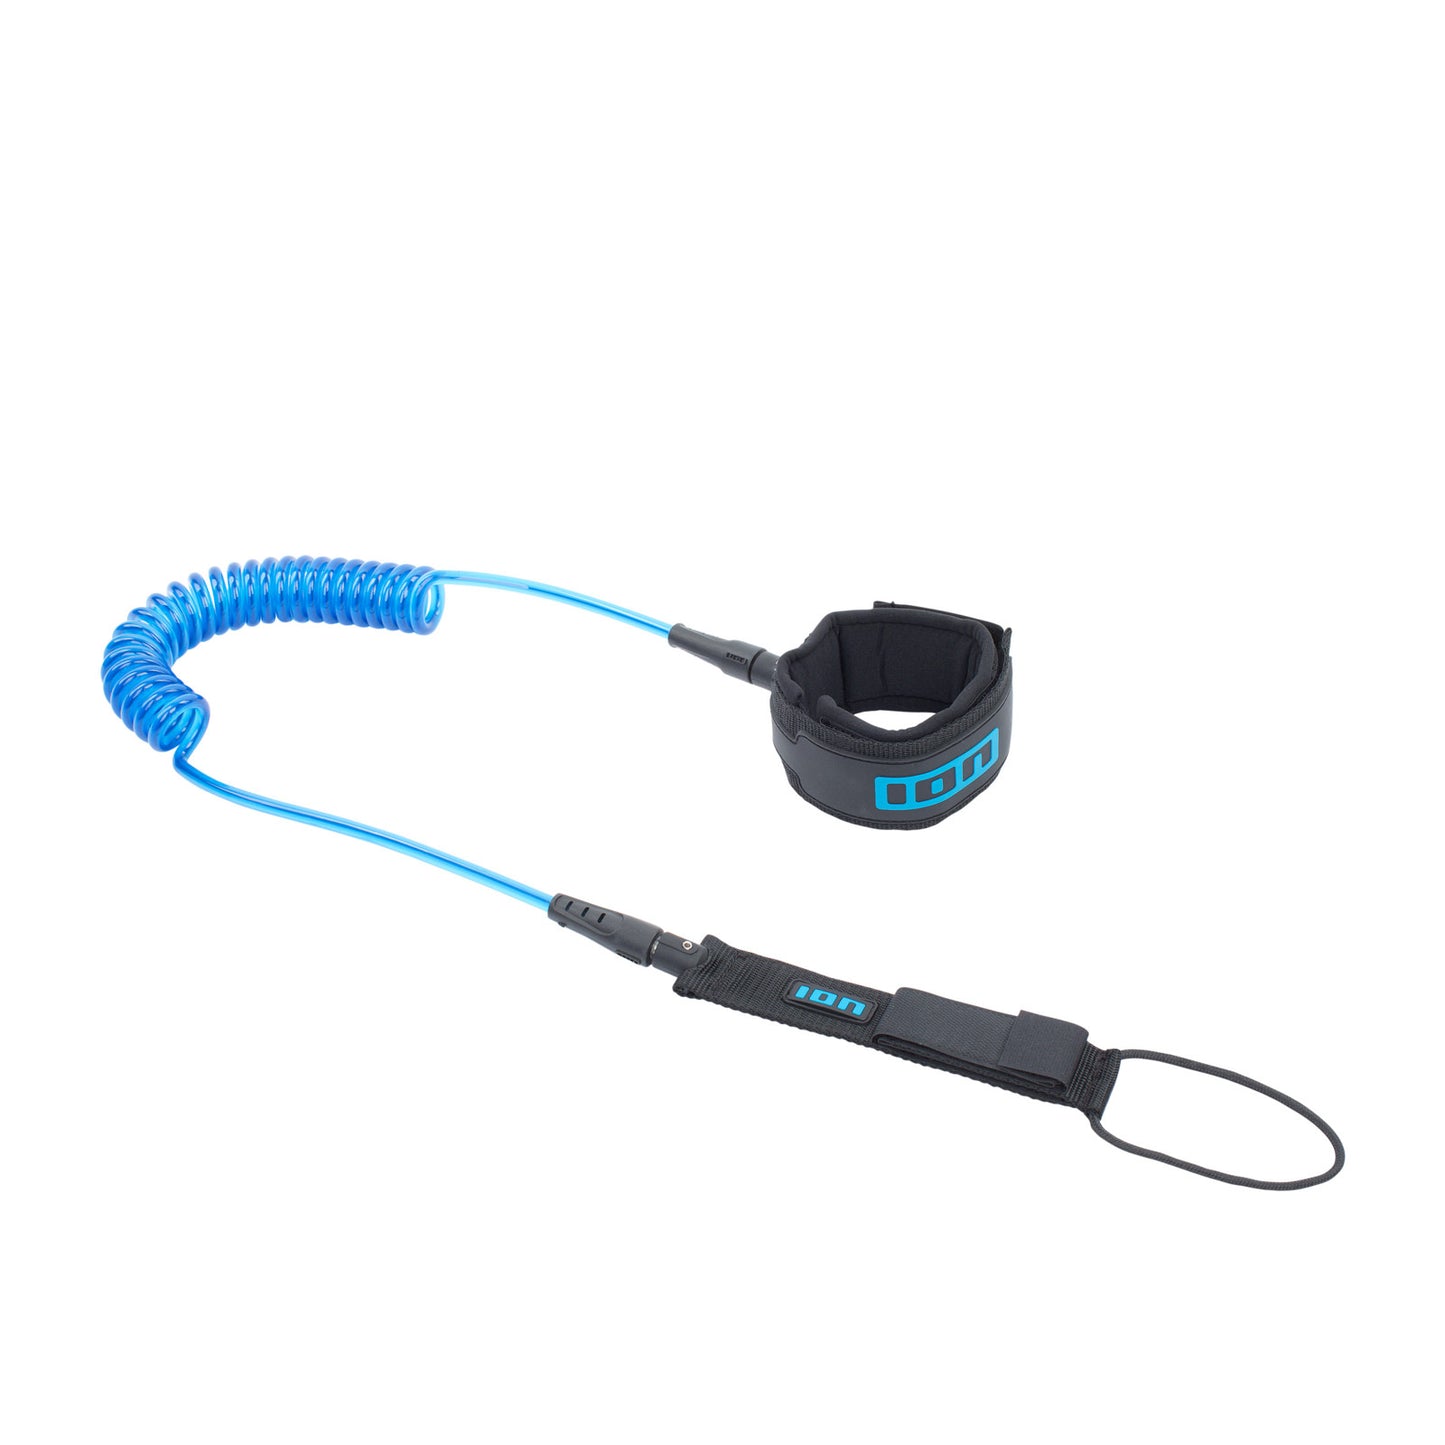 ION Core Coiled Leash für das Fußgelenk in blau für ein SUP Board vor weißem Hintergrund.